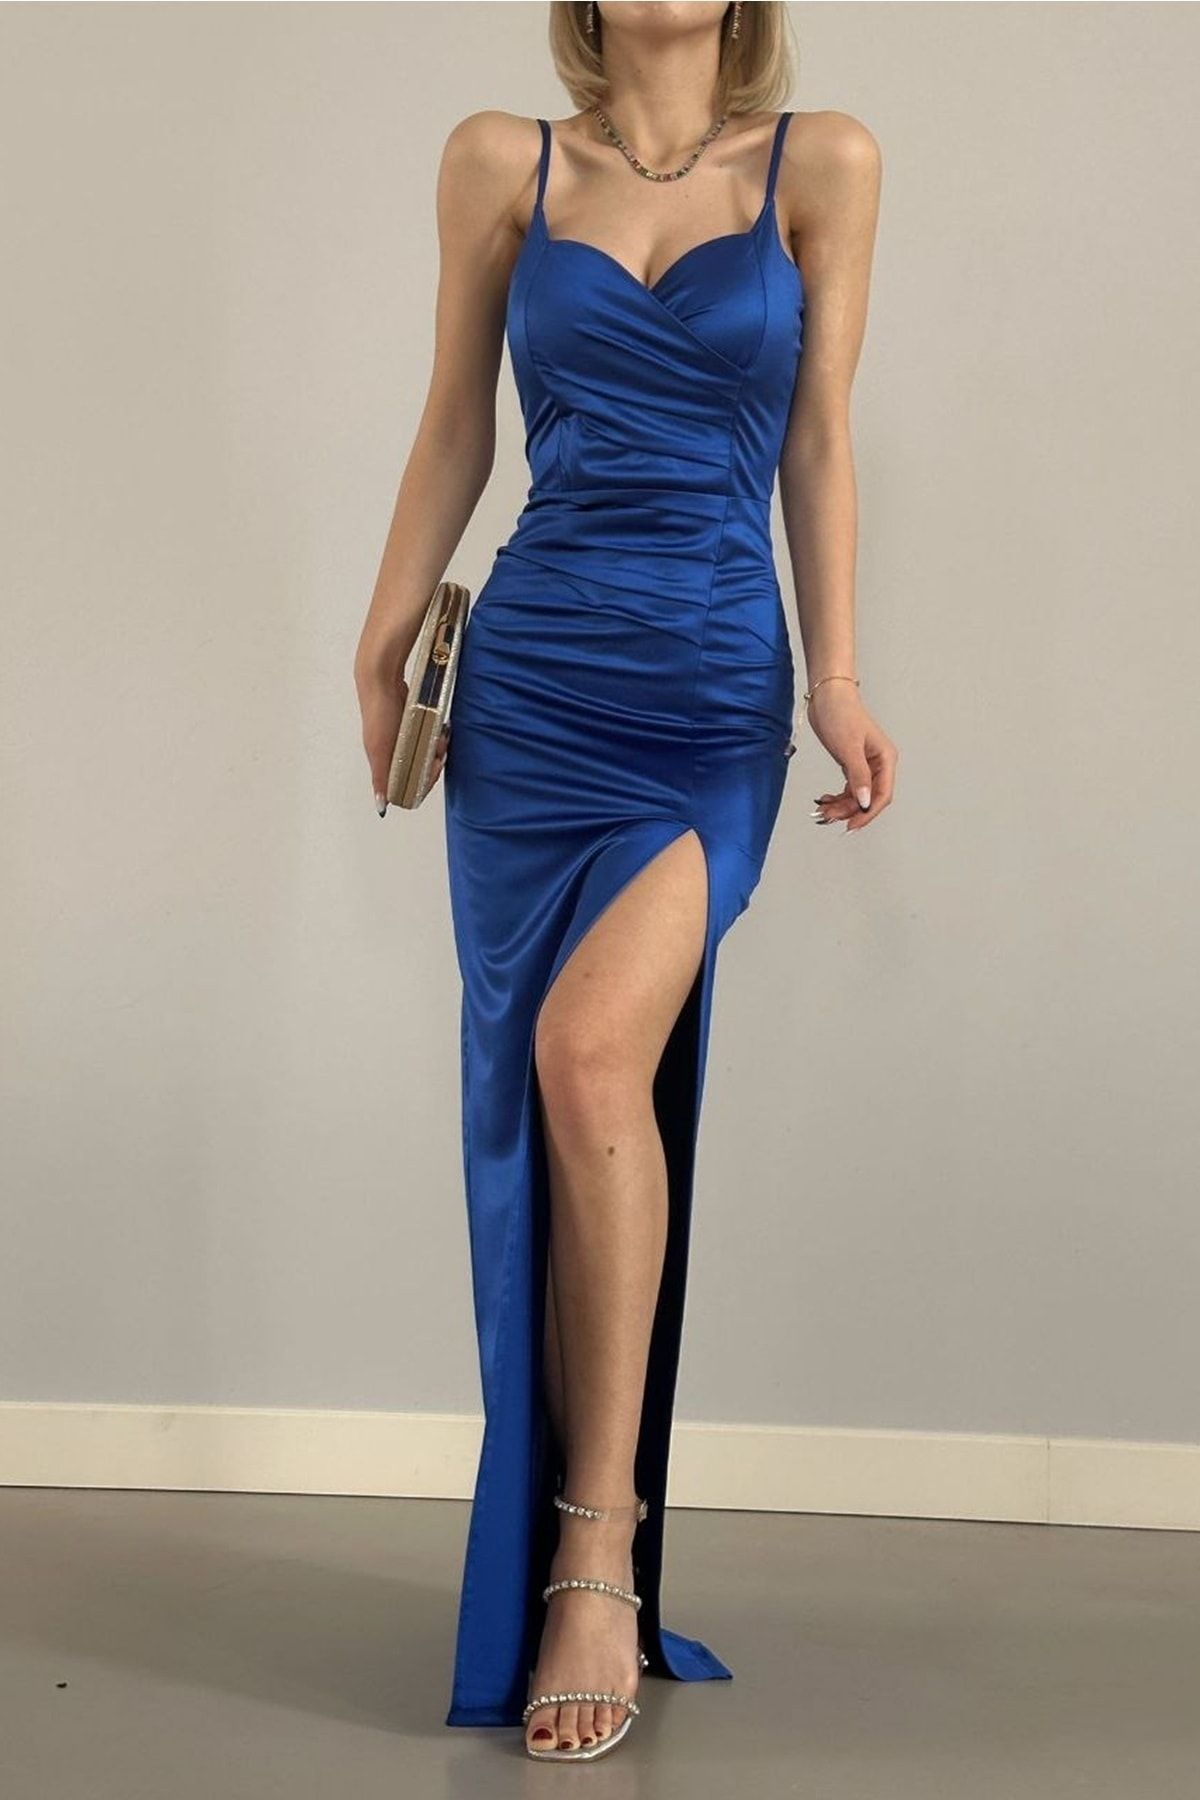 lovebox Kadın Saten Kumaş Göğüs Dekolte Ve Yırtmaç Tasarımlı Maxi Boy Saks Mavi Abiye Elbise 582177